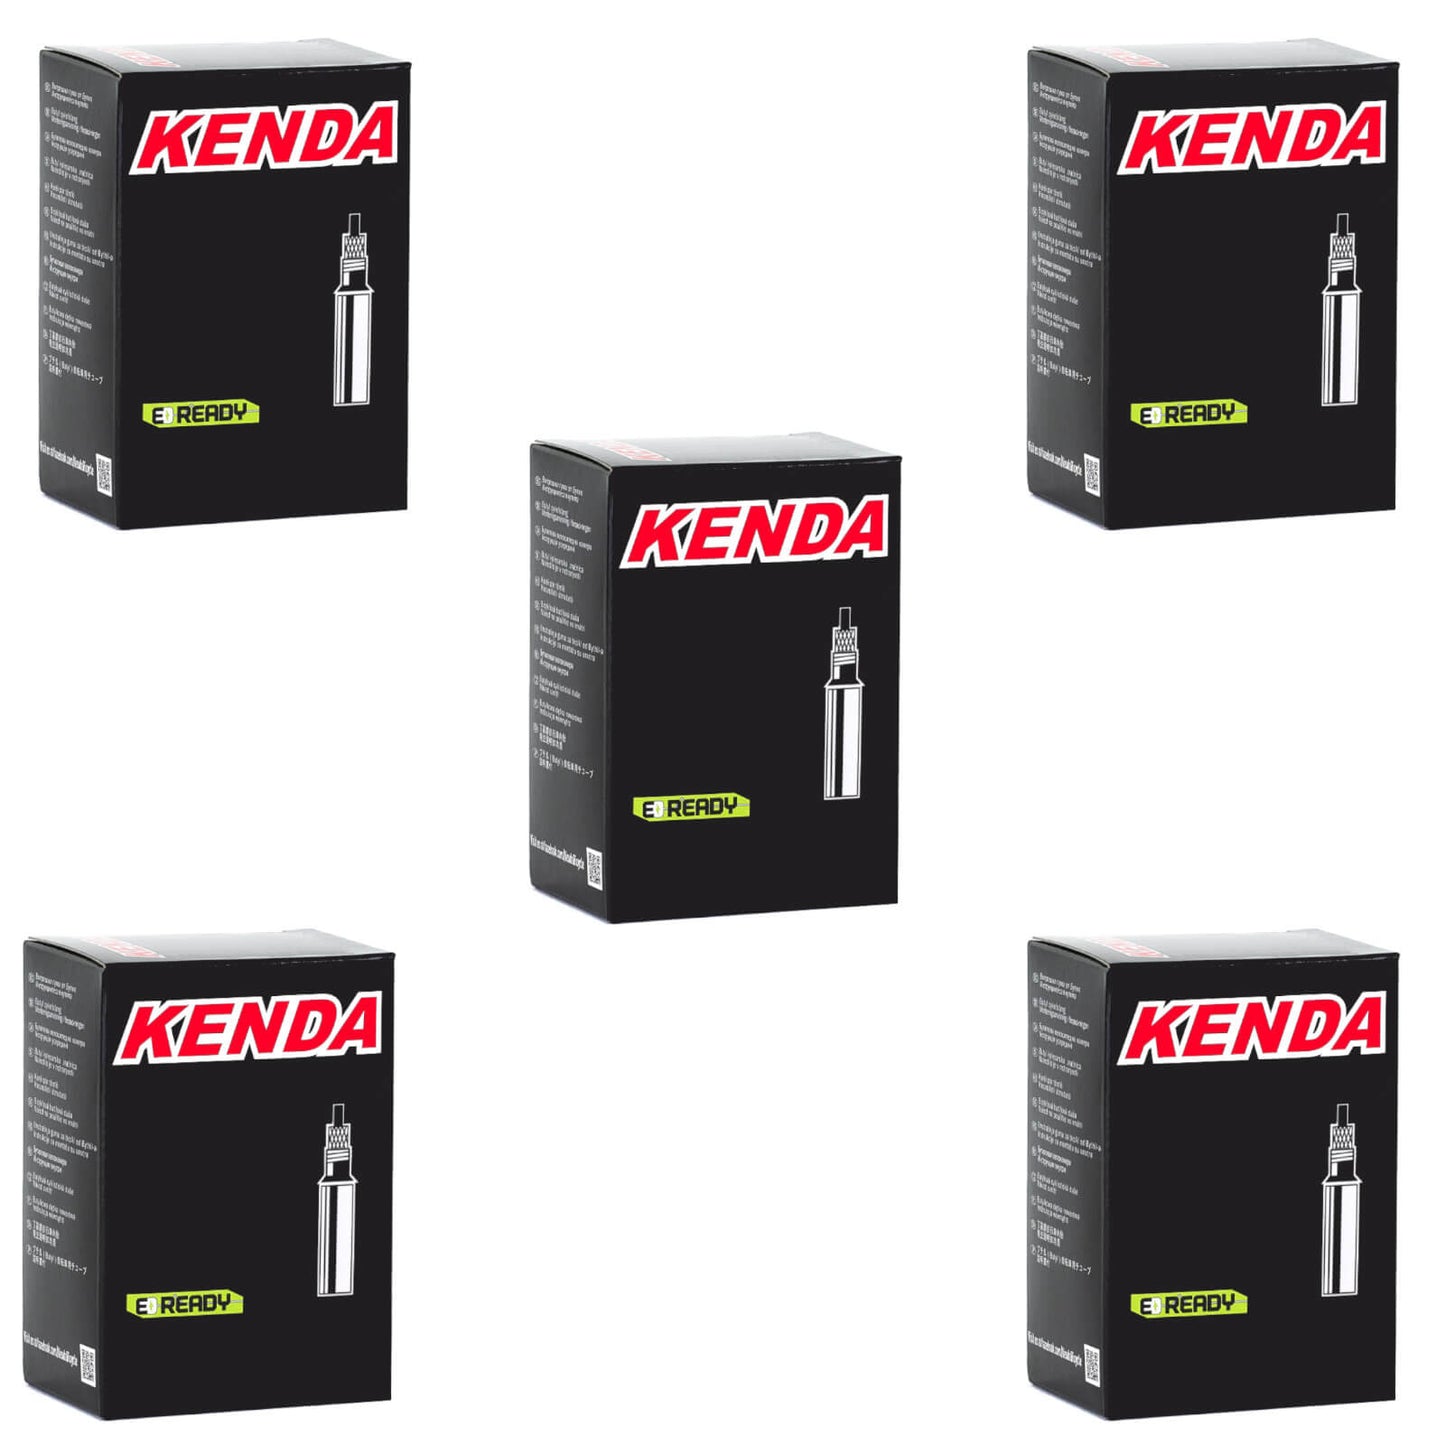 Kenda 700x30-43c Removable Core 60mm 700c Presta Valve Bike Inner Tube Pack of 5